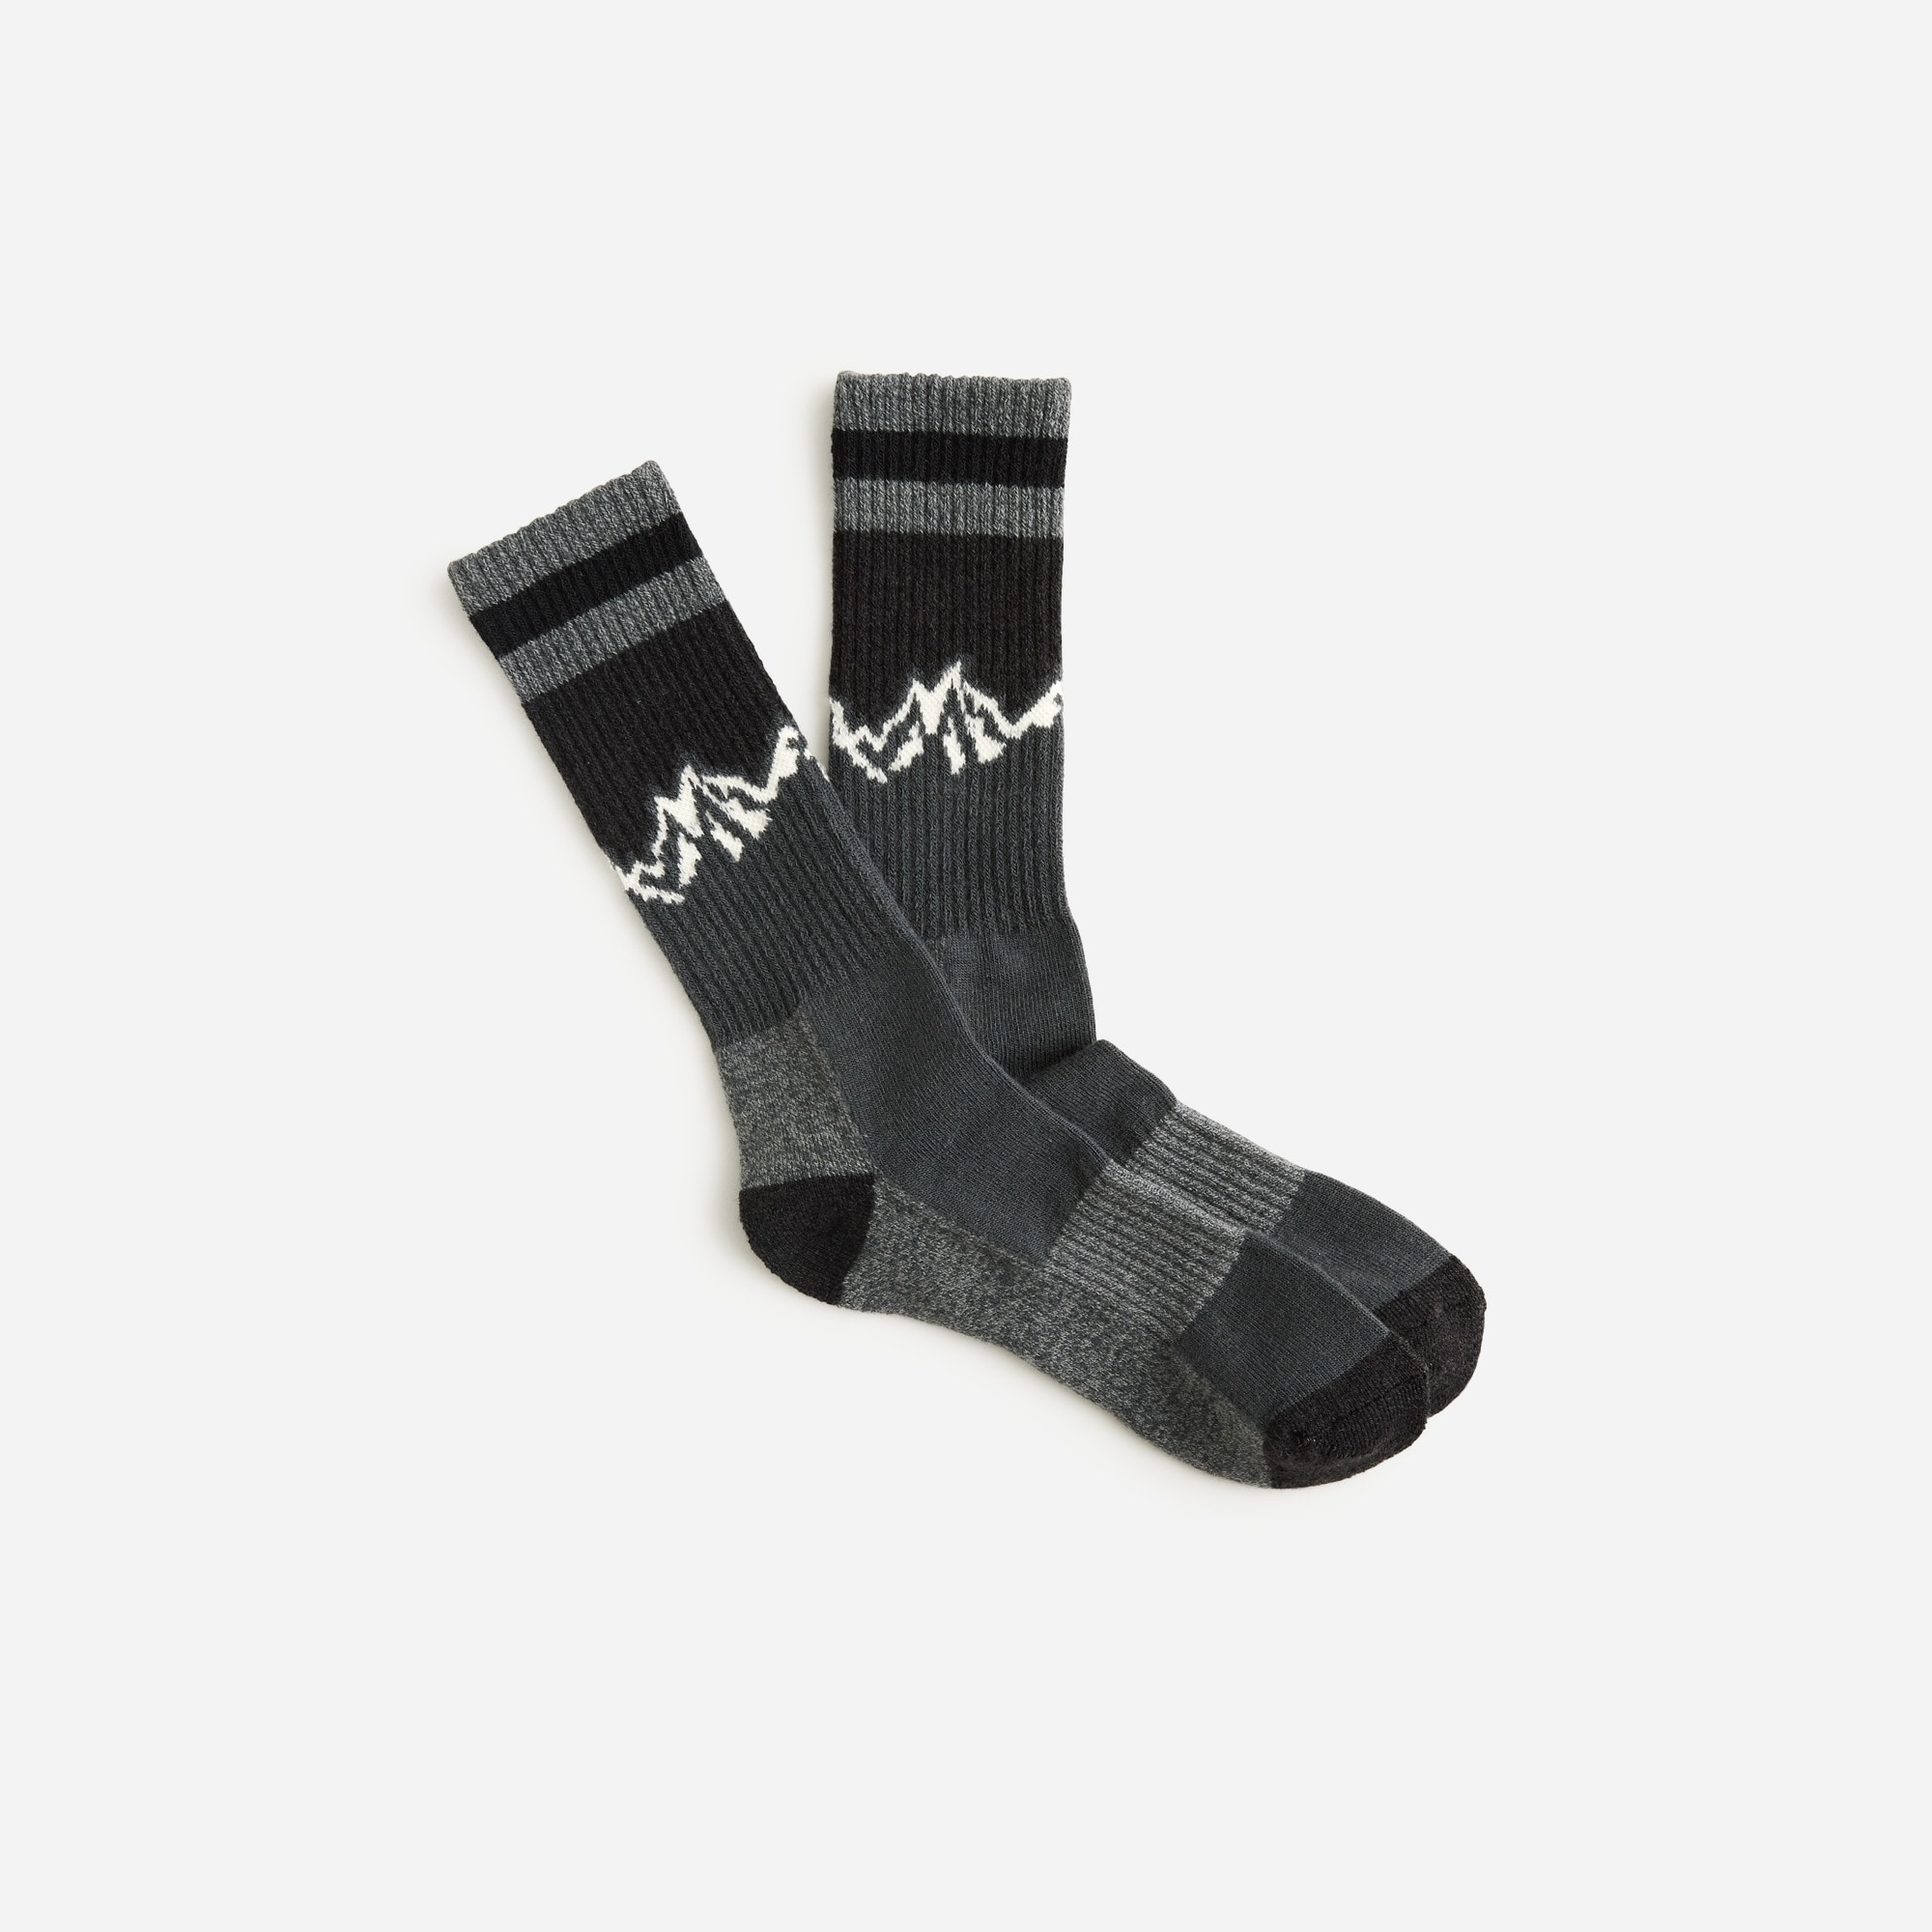  Nordic socks in wool blend